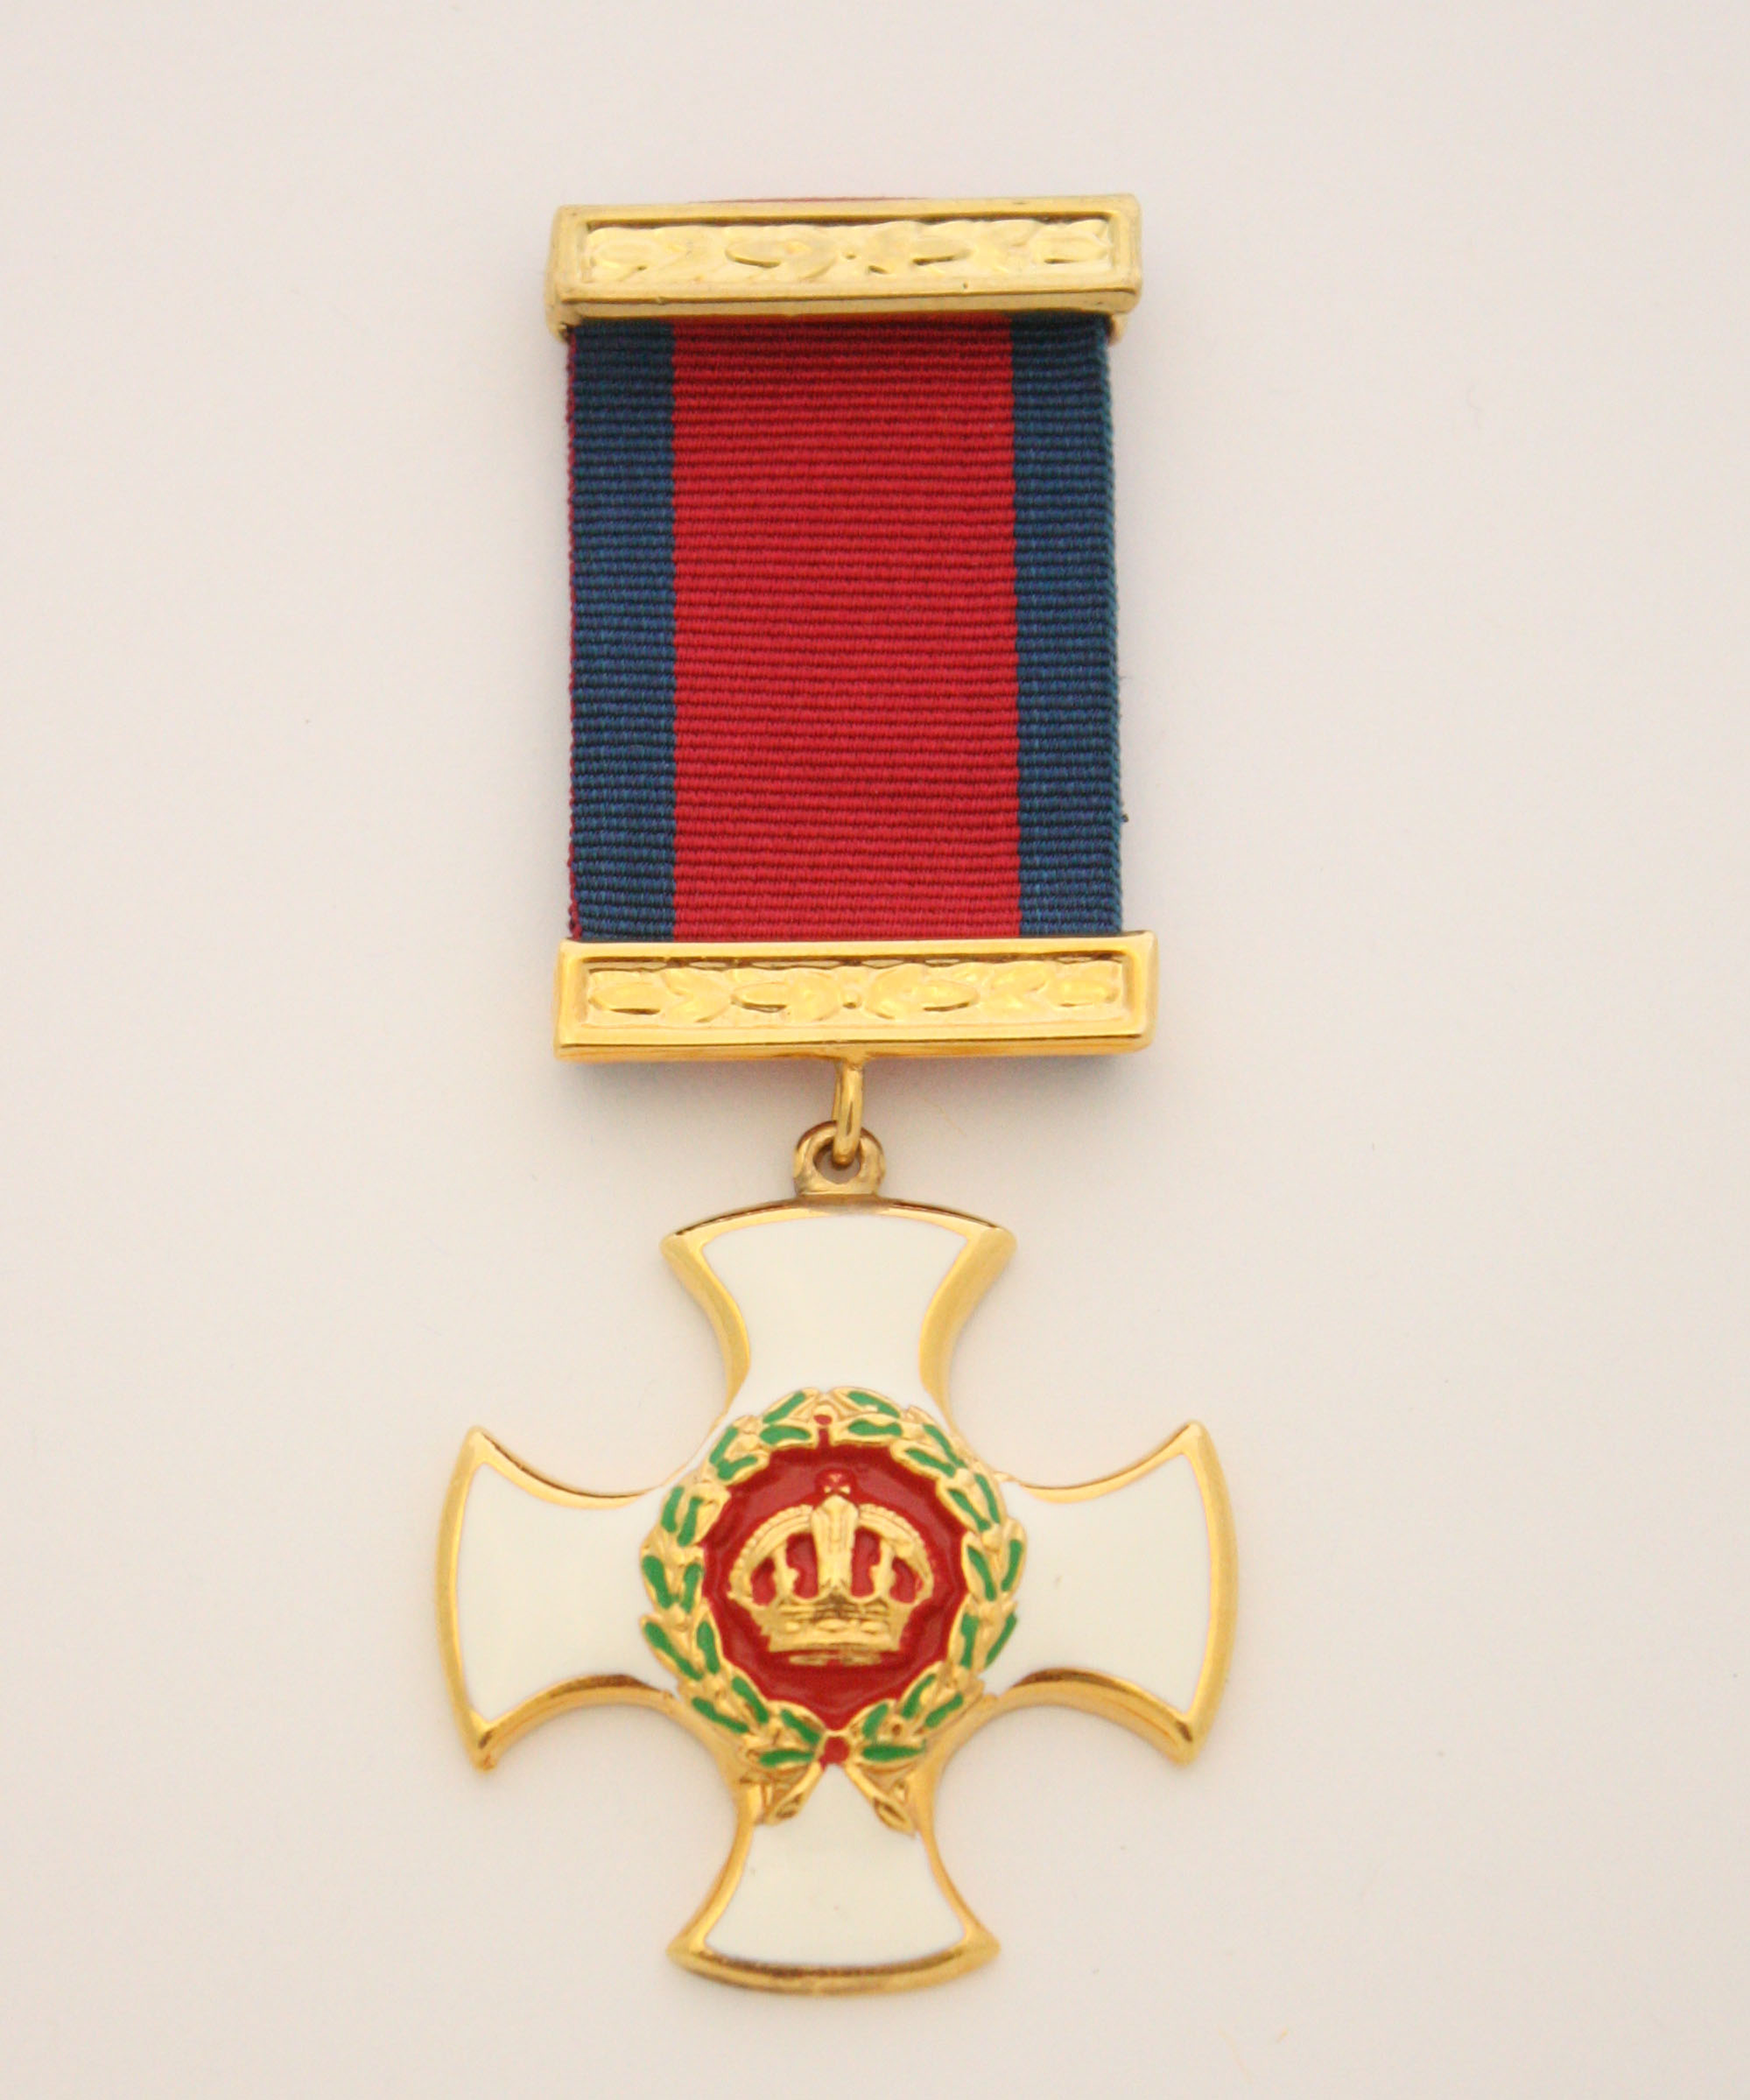 Full Size Distinguished Service Order DSO GRV George V Medal Stunning!